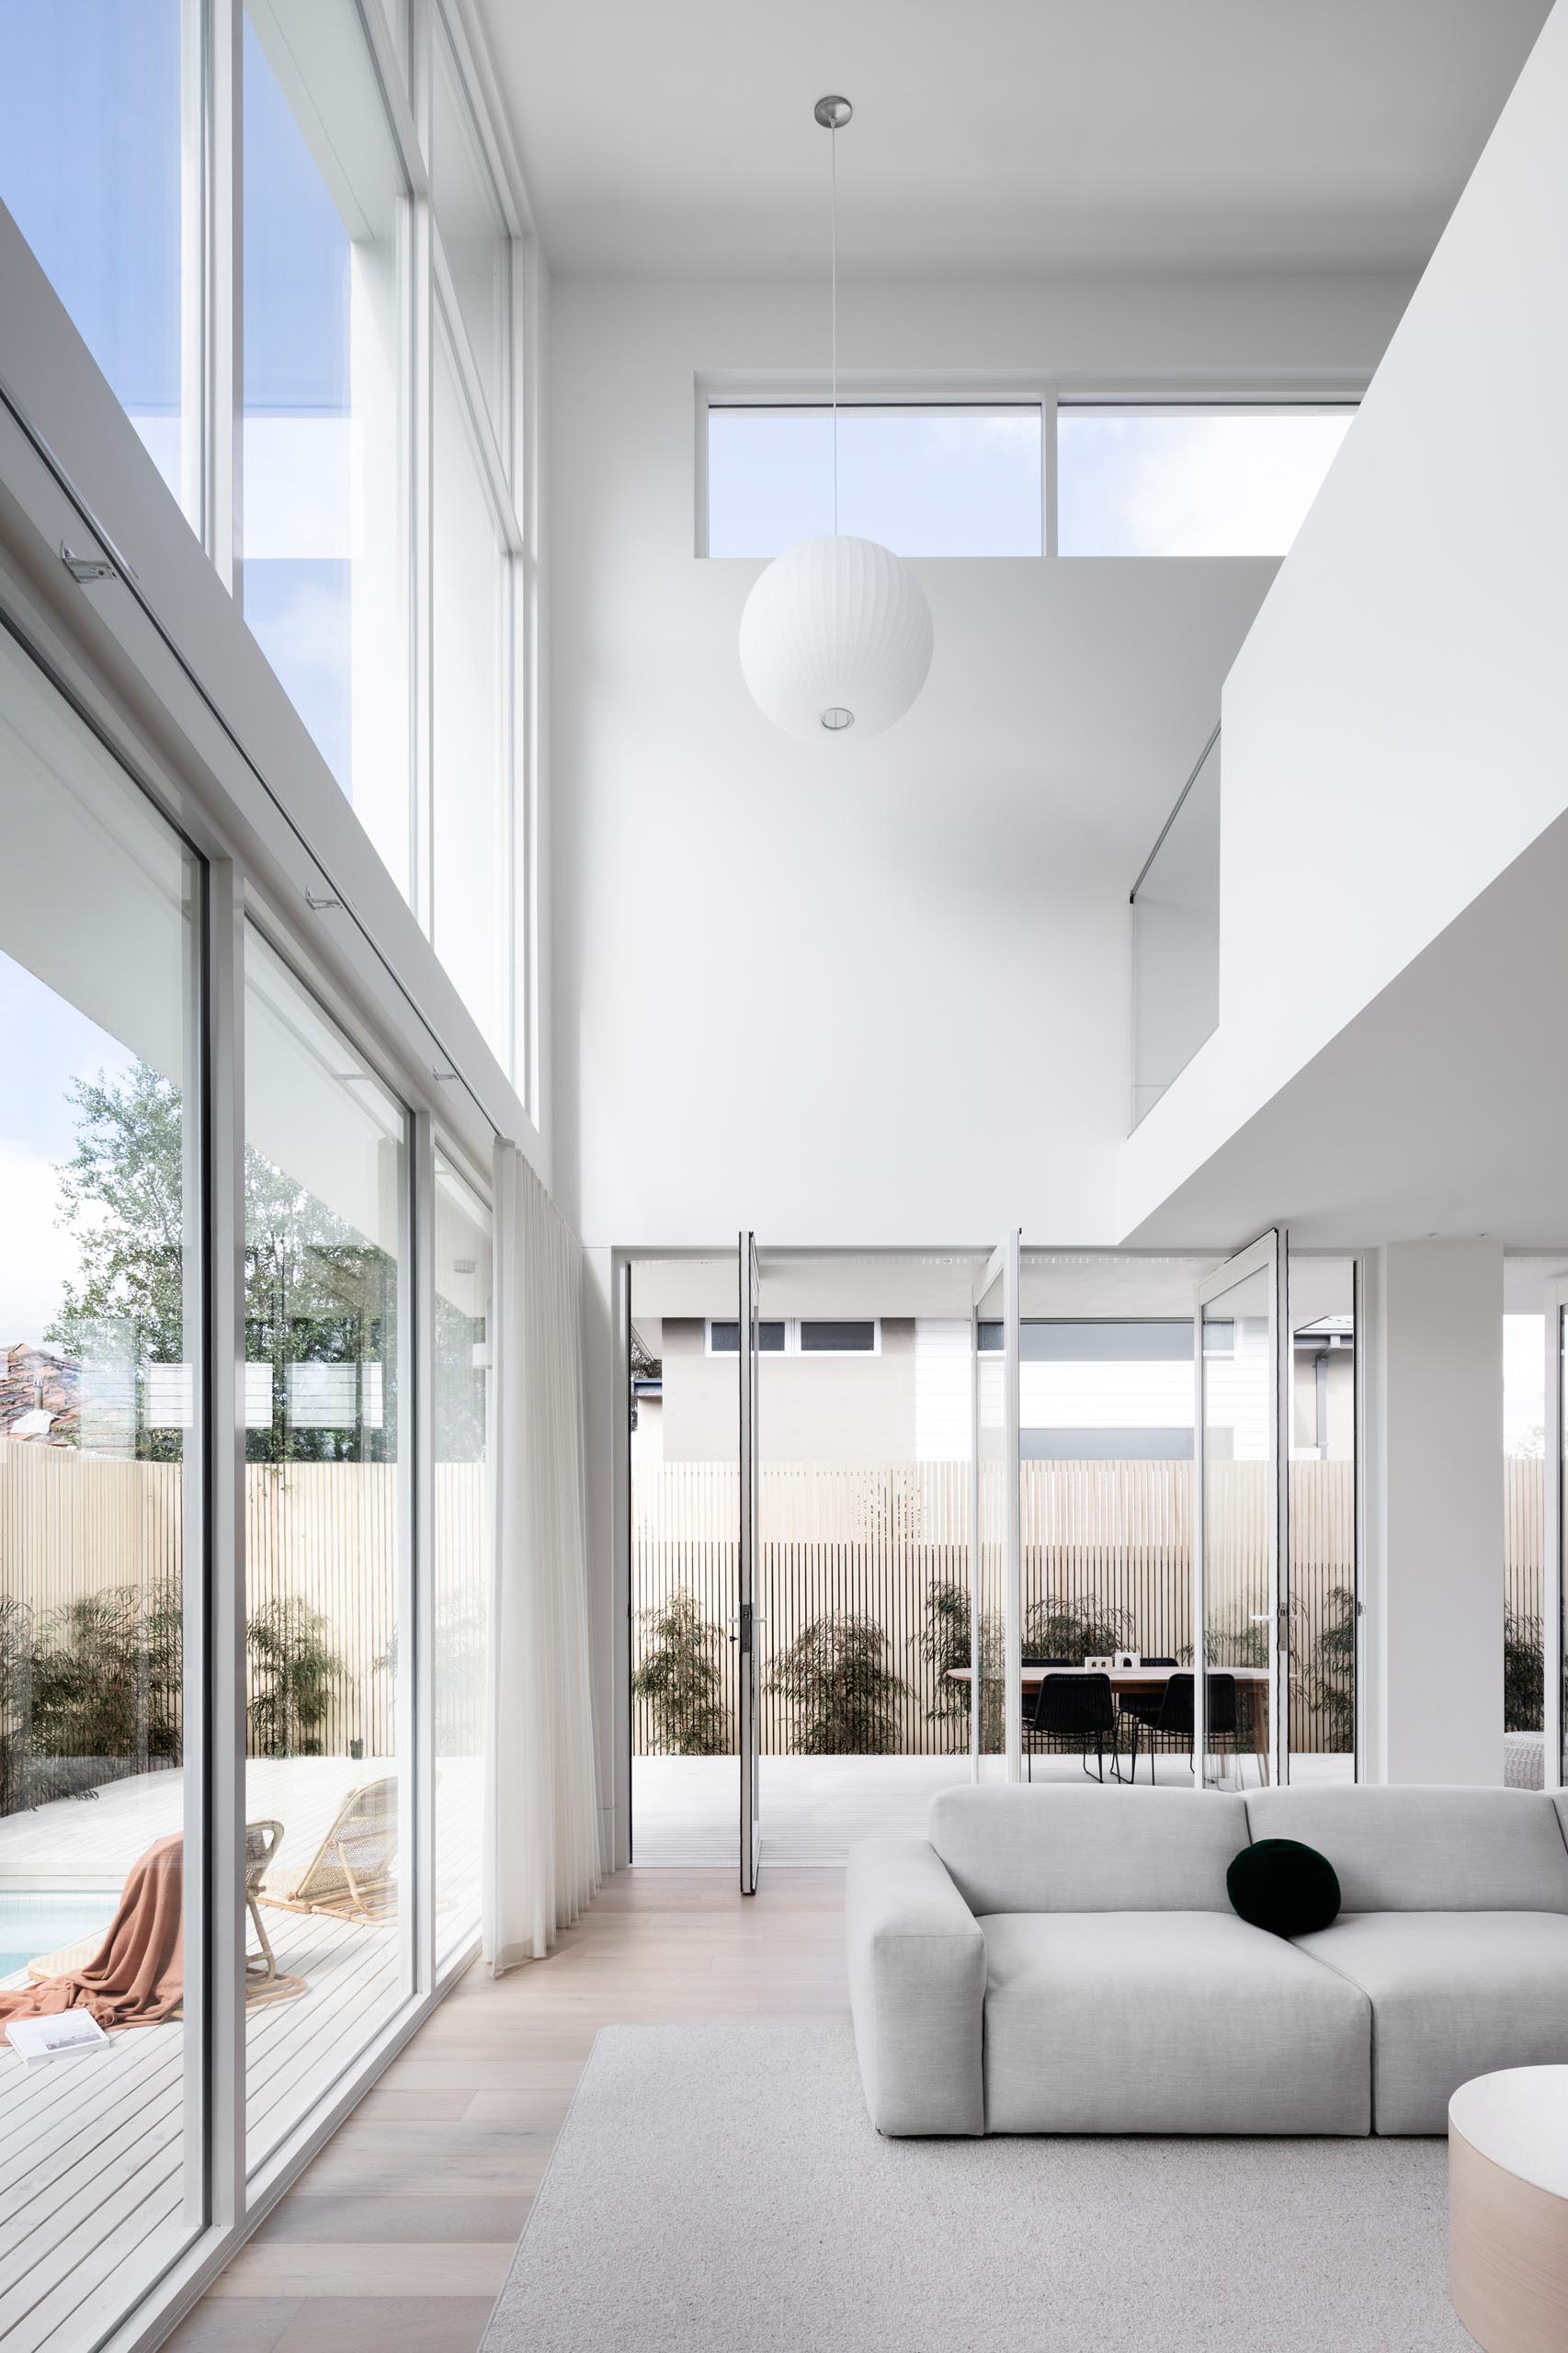 Поворотные части стеклянных стен соединяют внутреннее пространство с внешним миром этого современного дома.